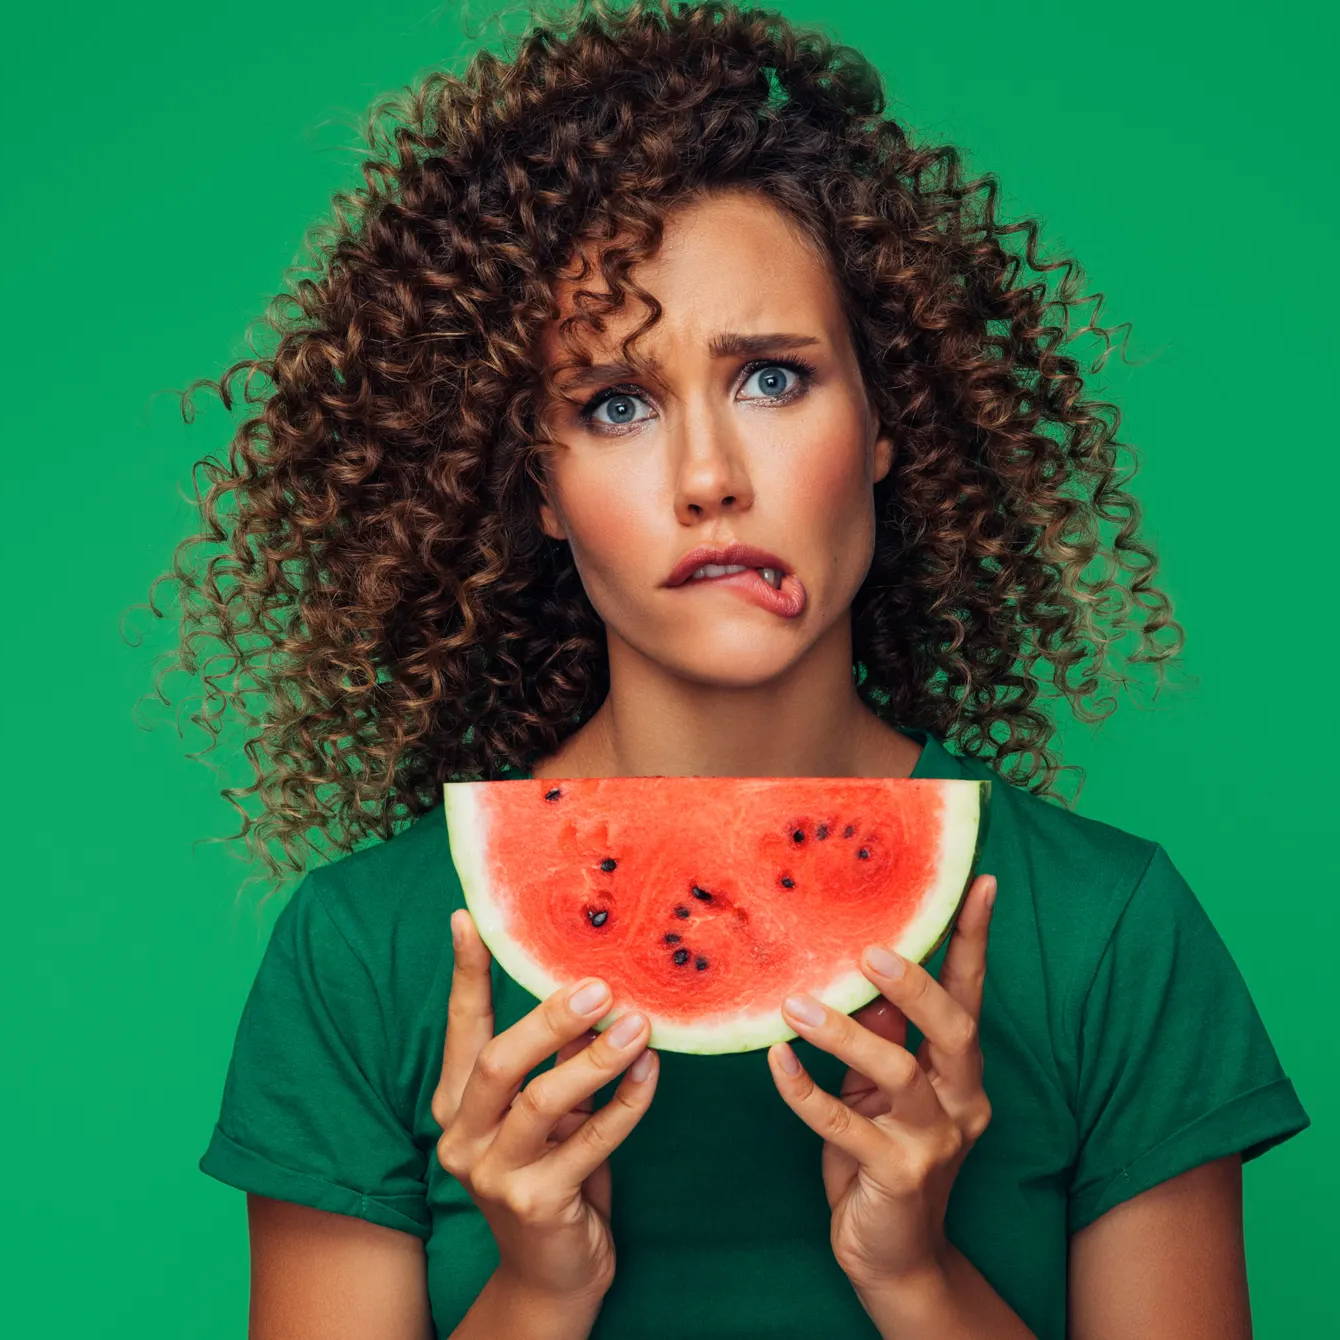 Was ist das orale Allergiesyndrom? Es könnte dieser Frau ein Kribbeln im Mund verursachen, wenn sie Heuschnupfen hat und ihre Wassermelone isst. 